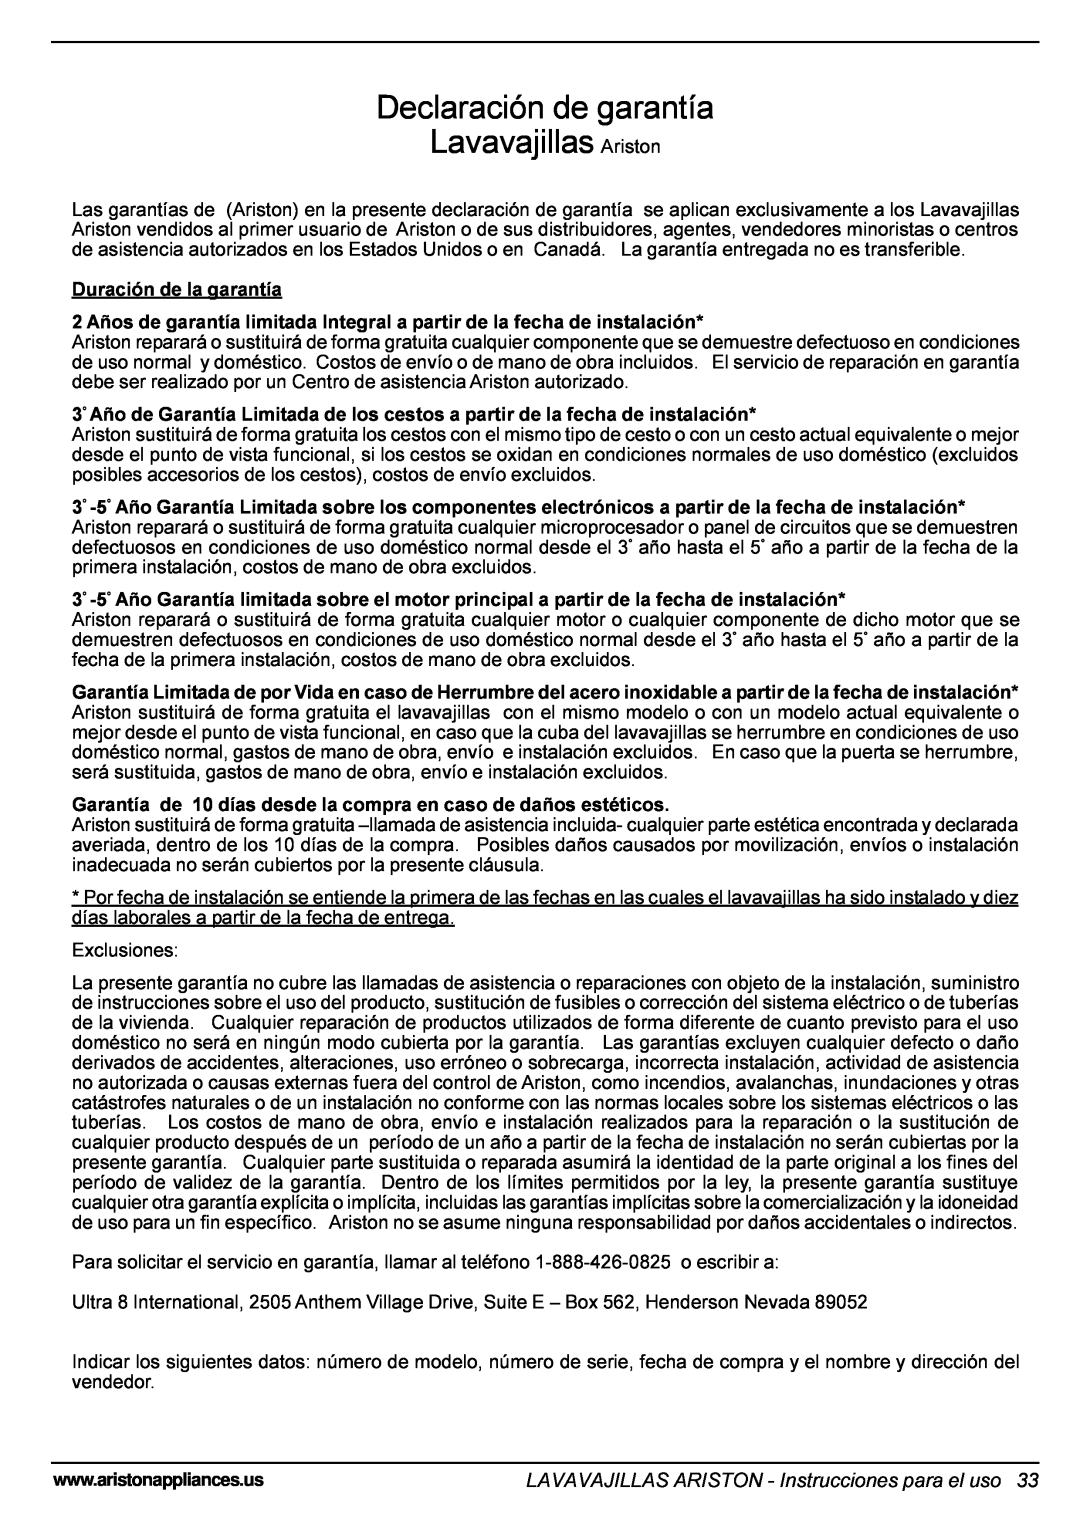 Ariston LI 670 B-S-W manual Declaración de garantía Lavavajillas Ariston, LAVAVAJILLAS ARISTON - Instrucciones para el uso 